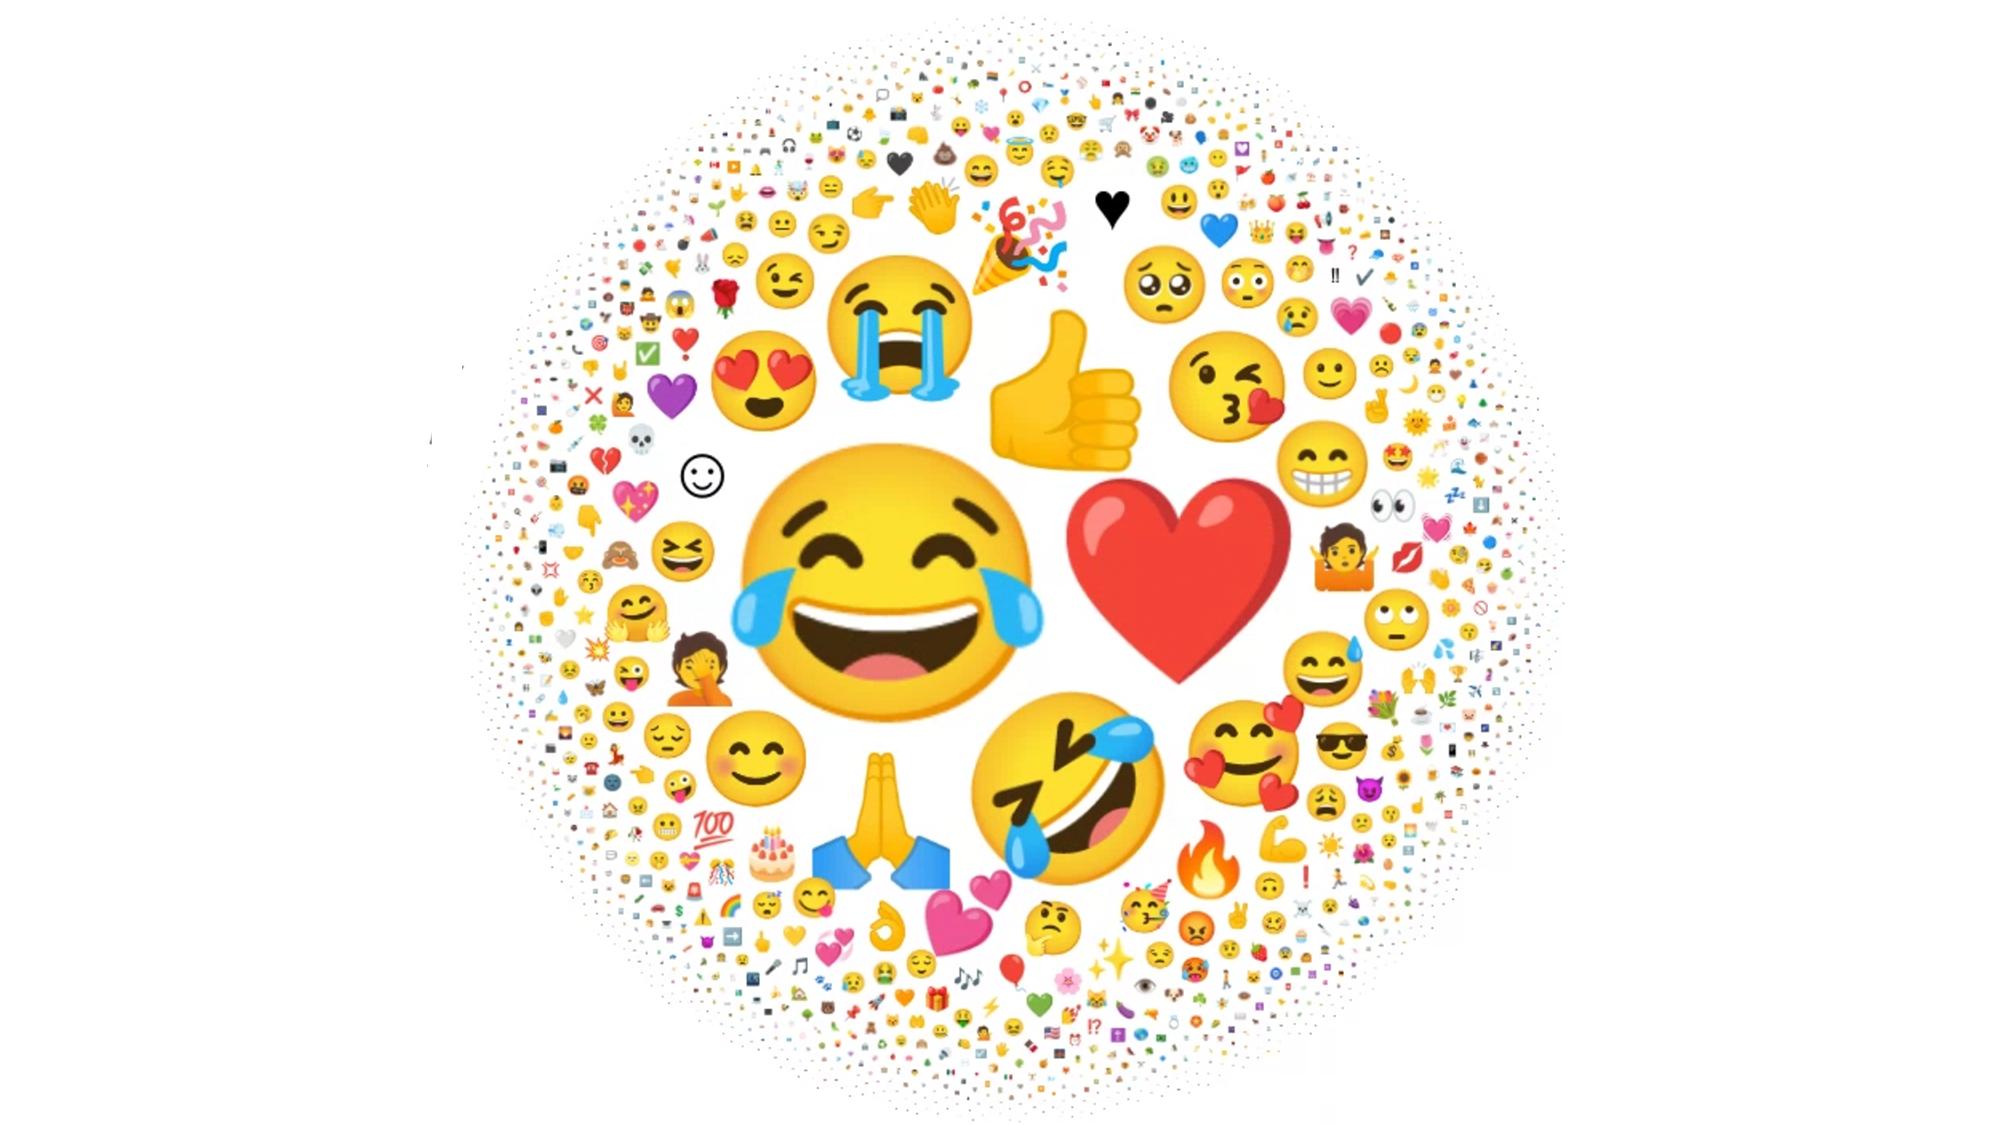 «Tears of Joy»-emojien var den mest brukte i verden i 2021, ifølge organisasjonen bak de «offisielle» emojiene, Unicode Consortium. I grafikken tilsvarer emojienes størrelse den relative bruken. 